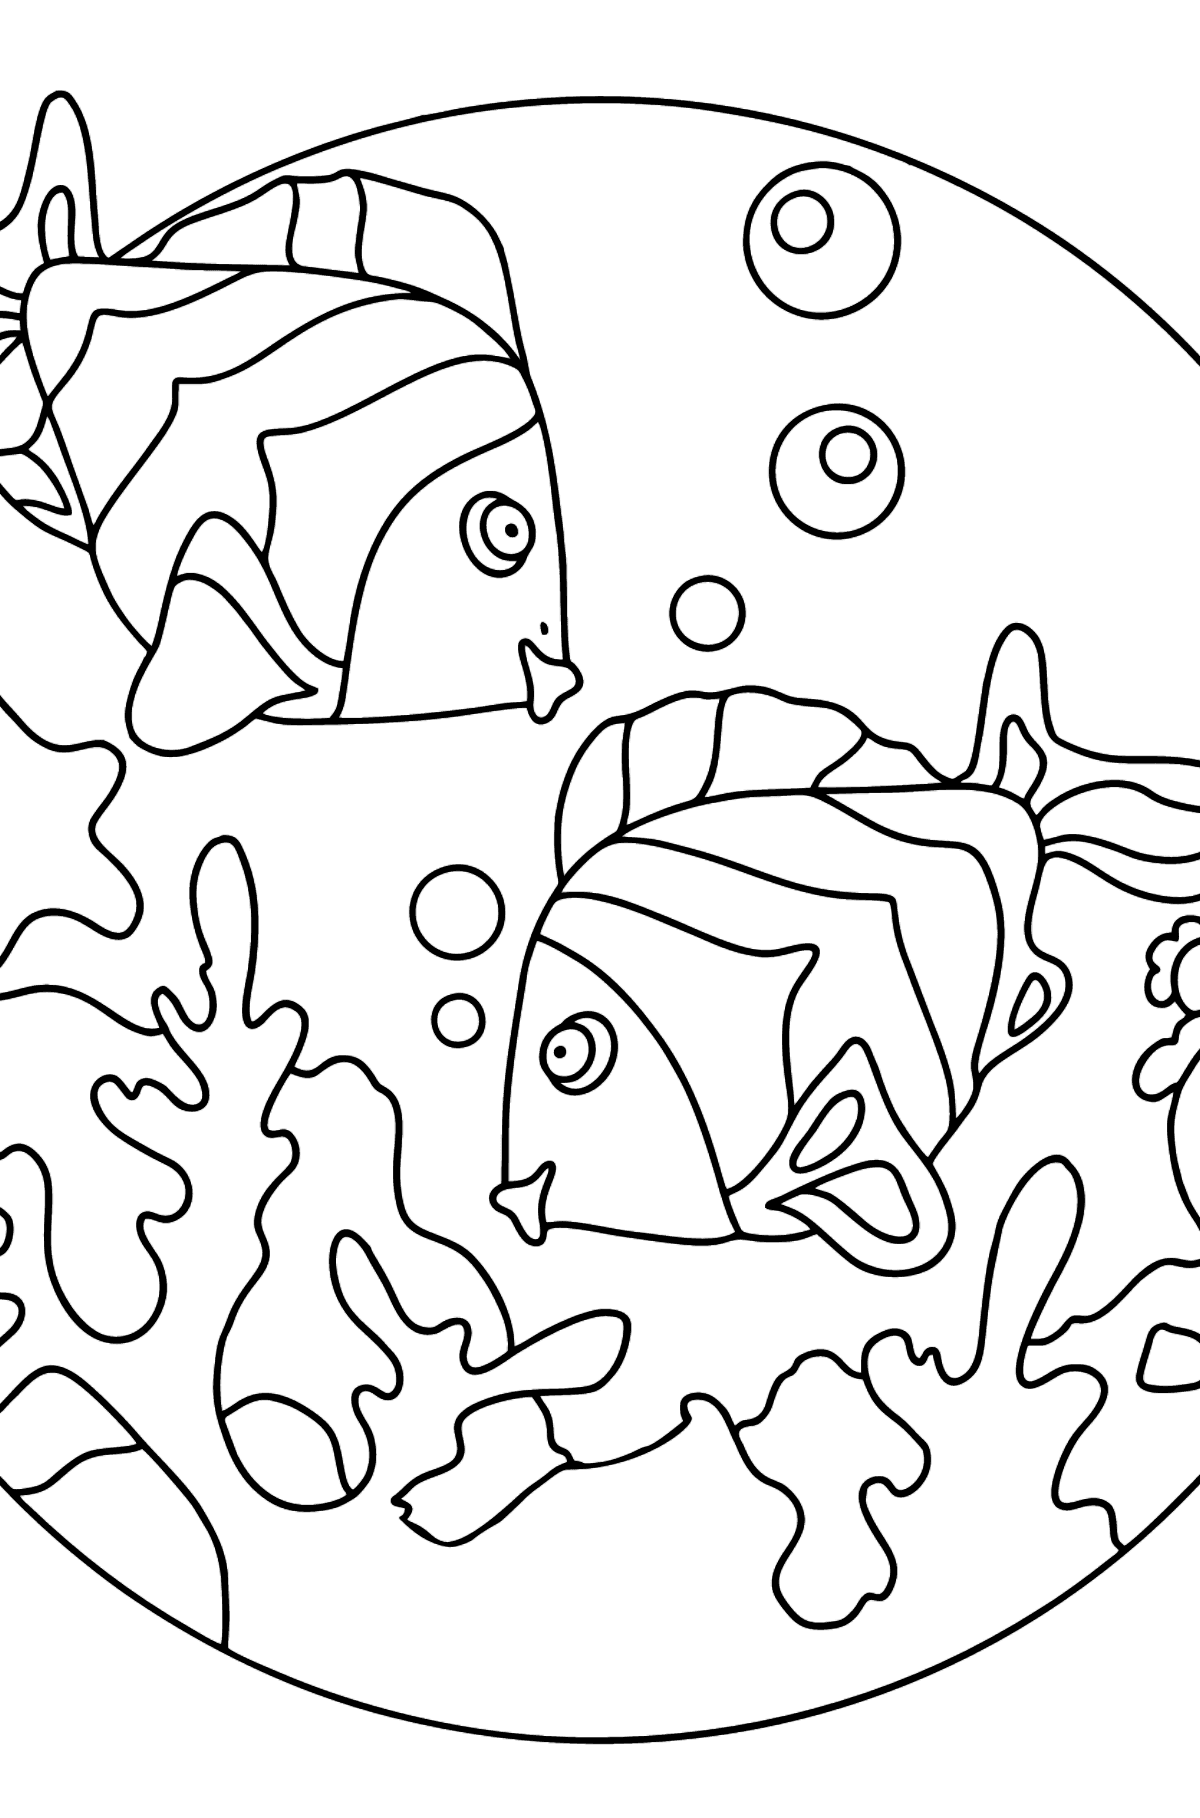 Desenho de peixe pequeno para colorir - Imagens para Colorir para Crianças